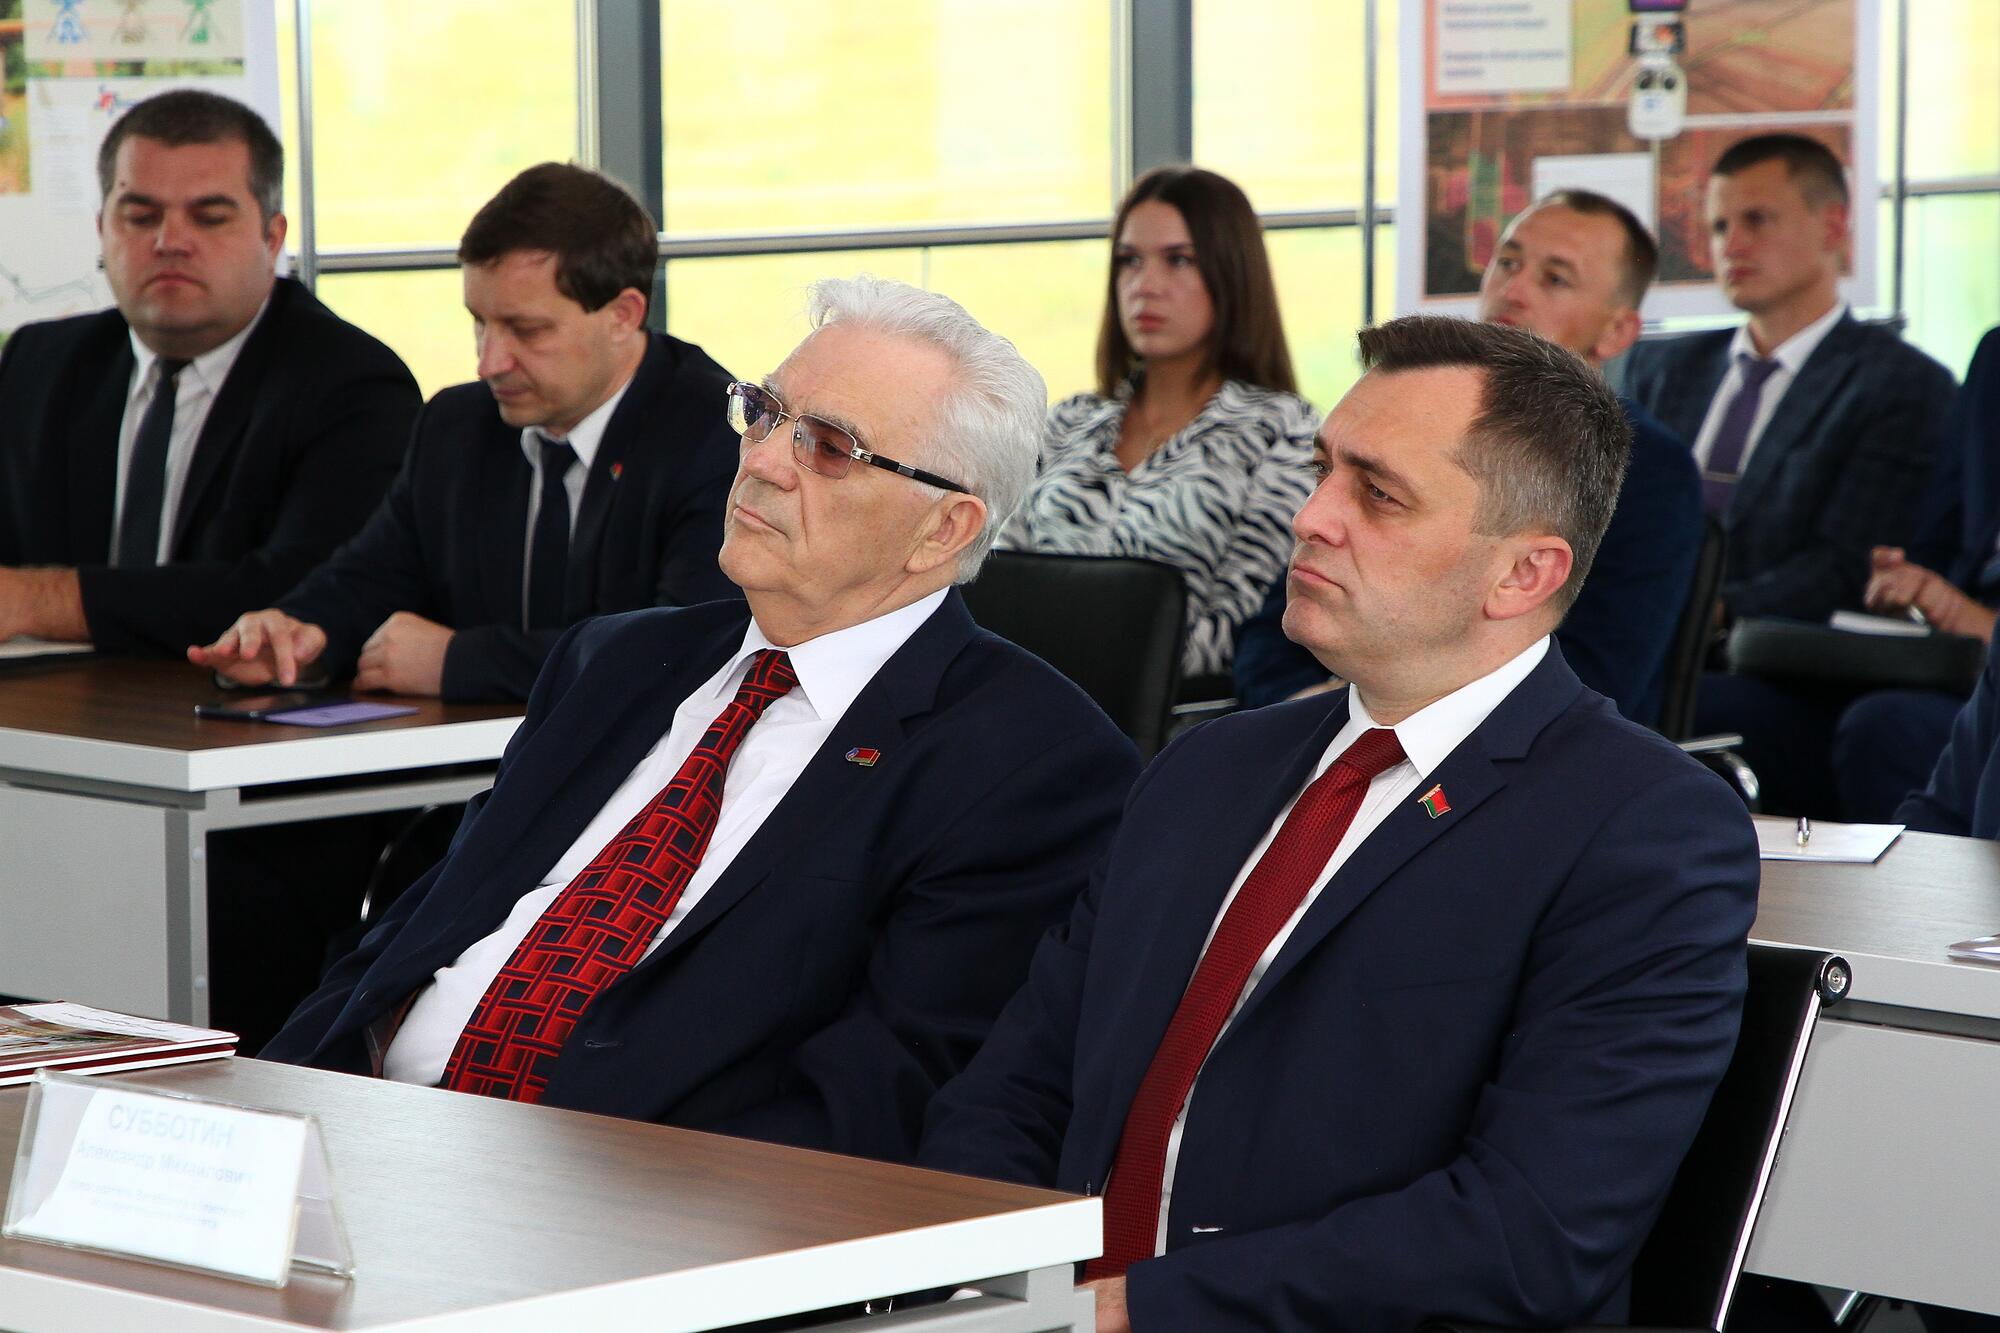 Центр точного земледелия СХП «Мазоловогаз» посетил председатель Витебского областного исполнительного комитета Александр Субботин